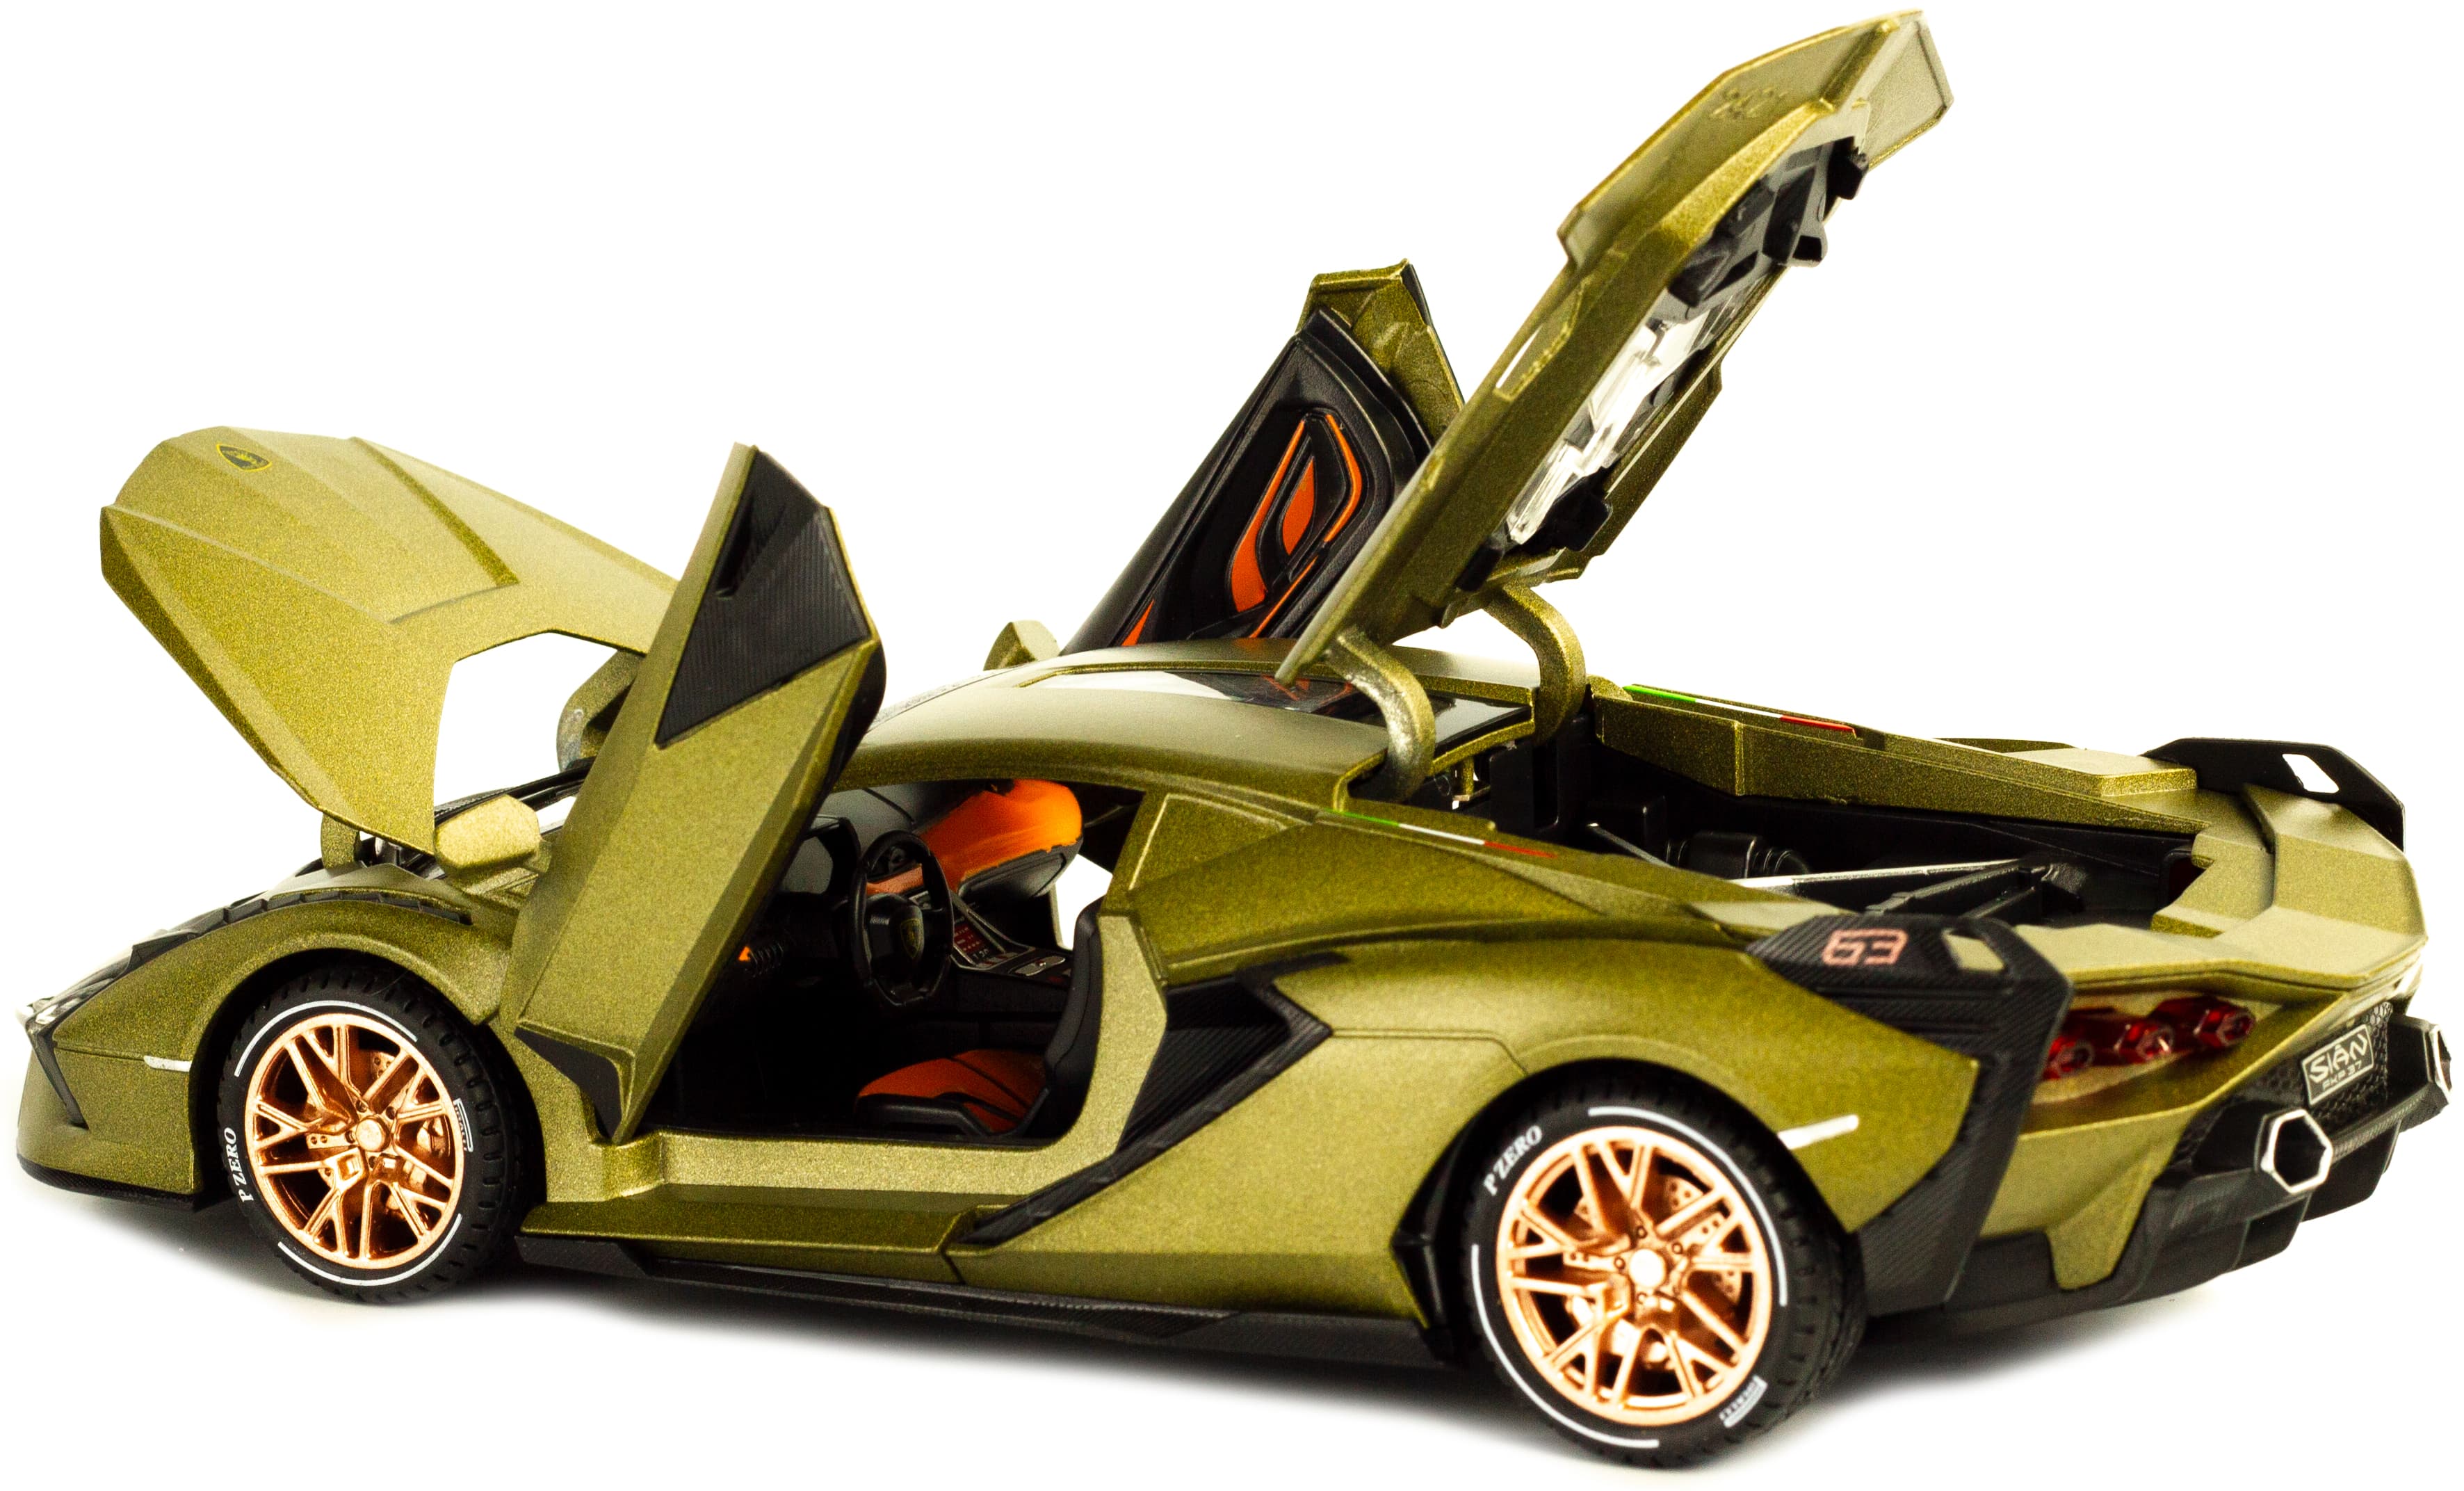 Металлическая машинка Che Zhi 1:24 «Lamborghini Sian» CZ129A, 21 см. инерционная, свет, звук / Микс